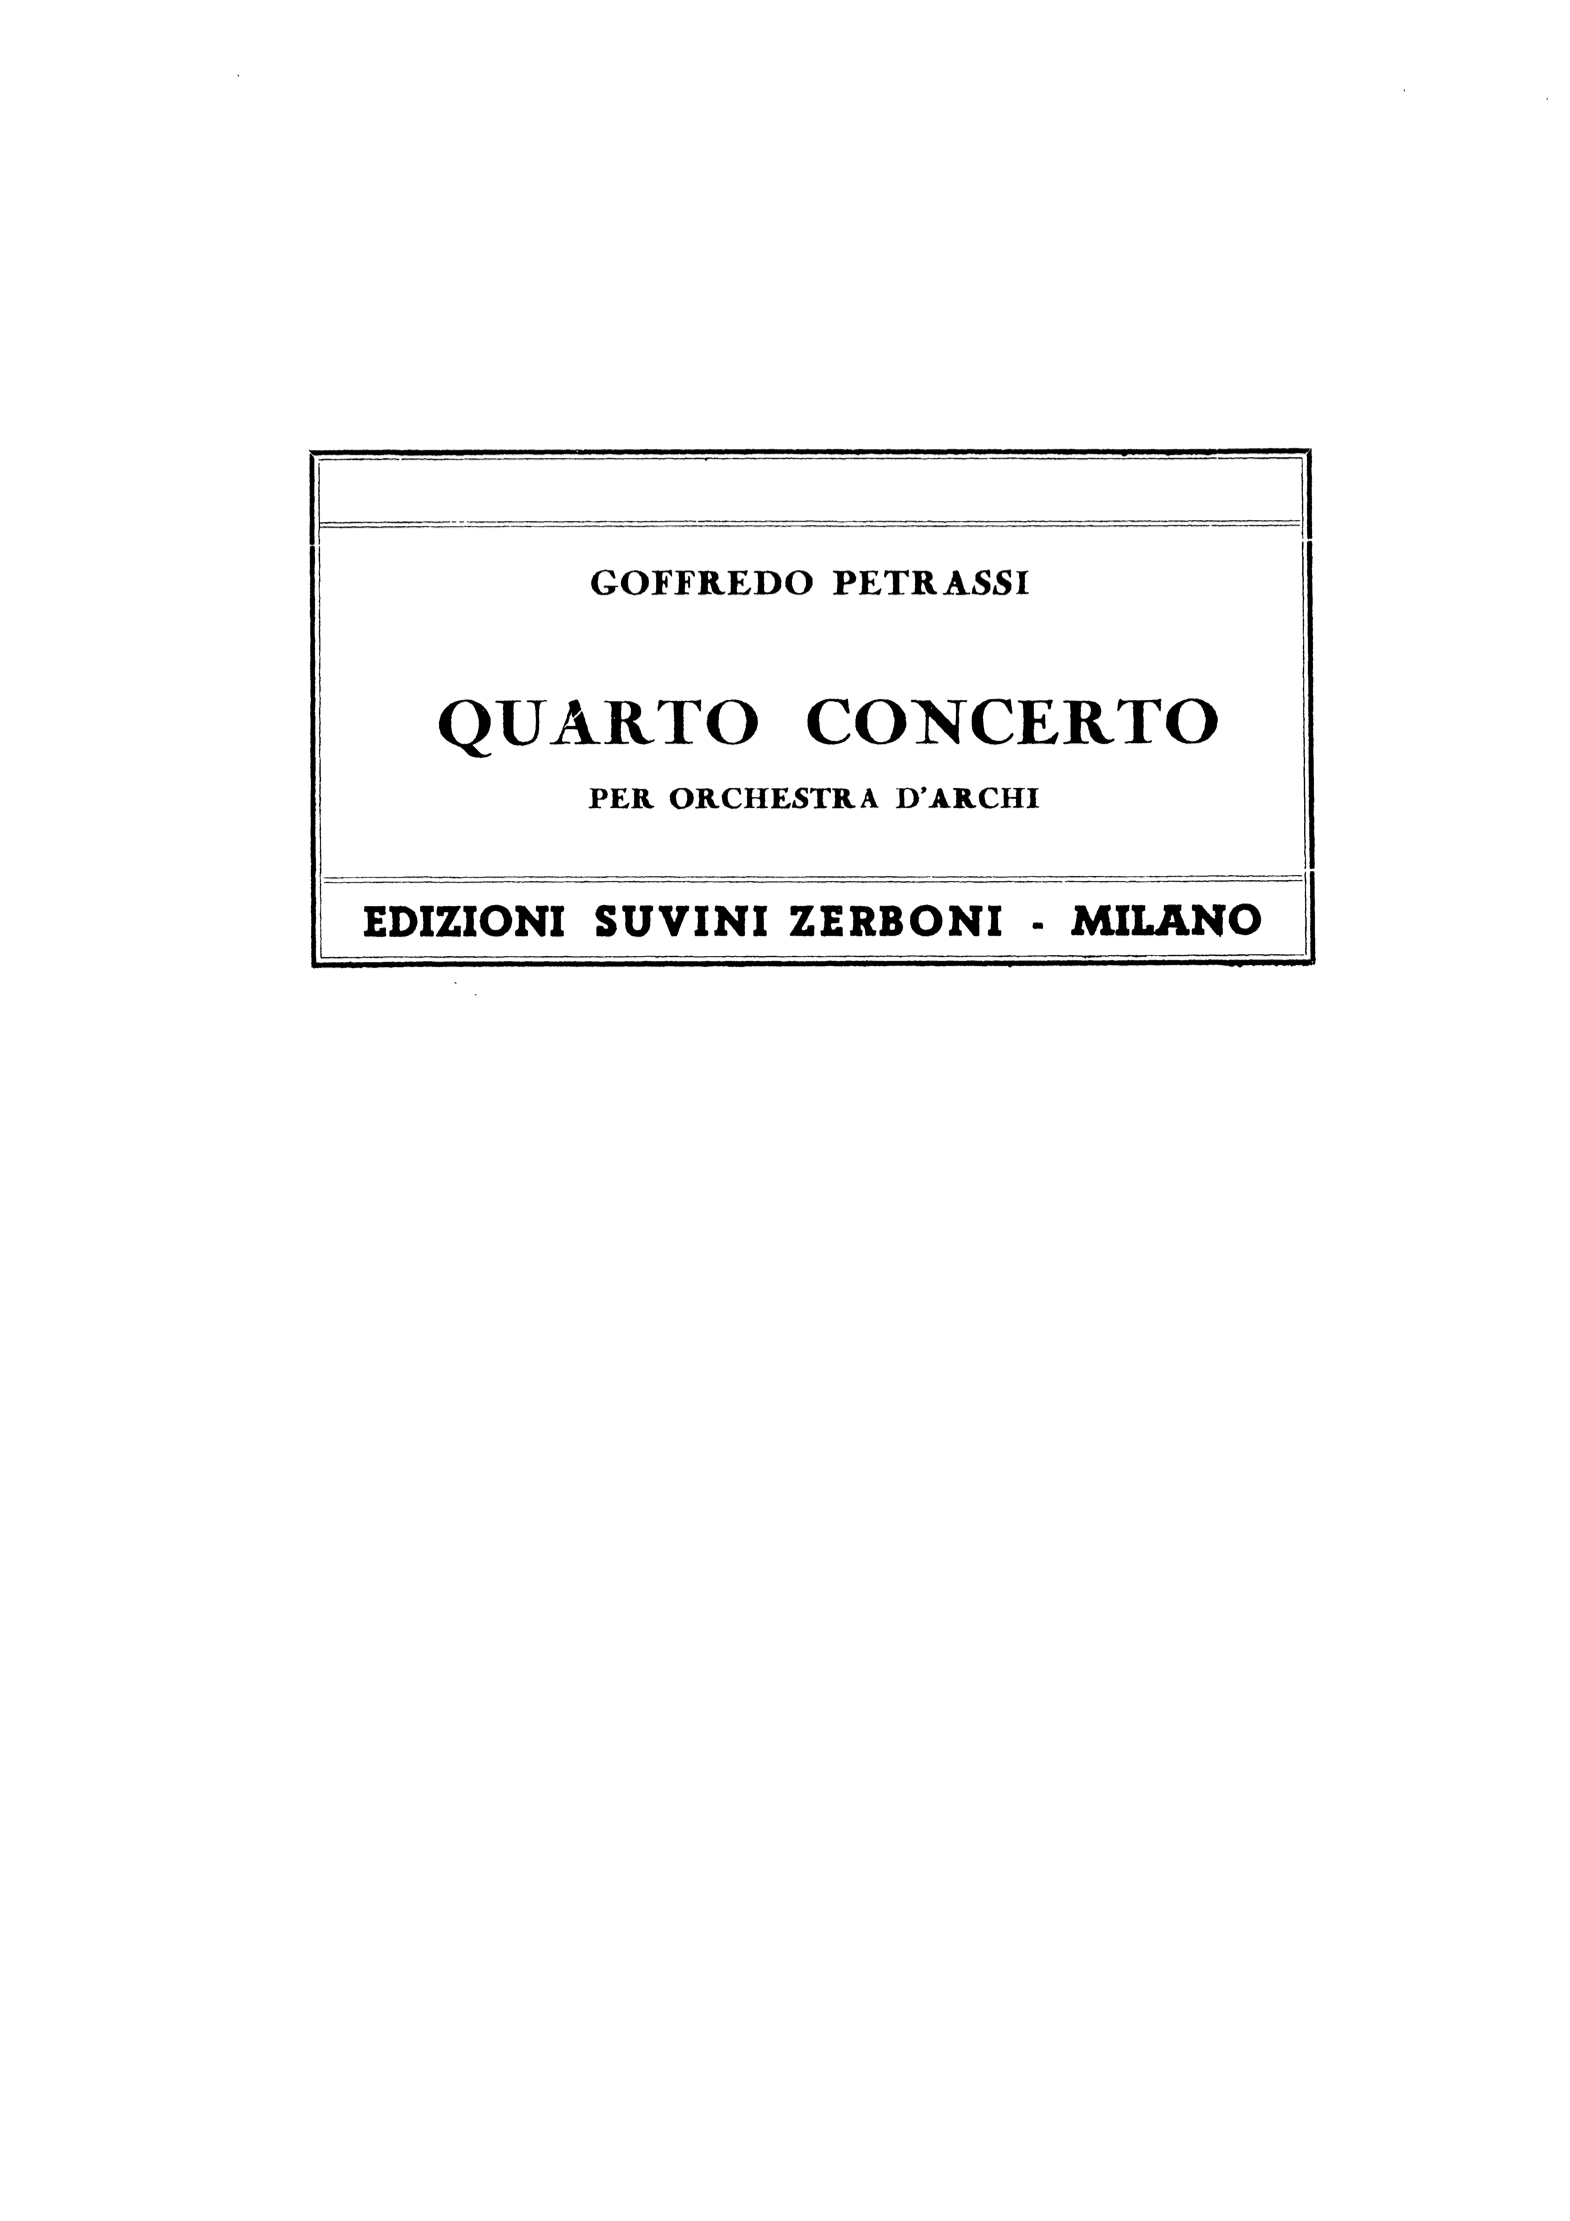 Quarto concerto_Petrassi 1